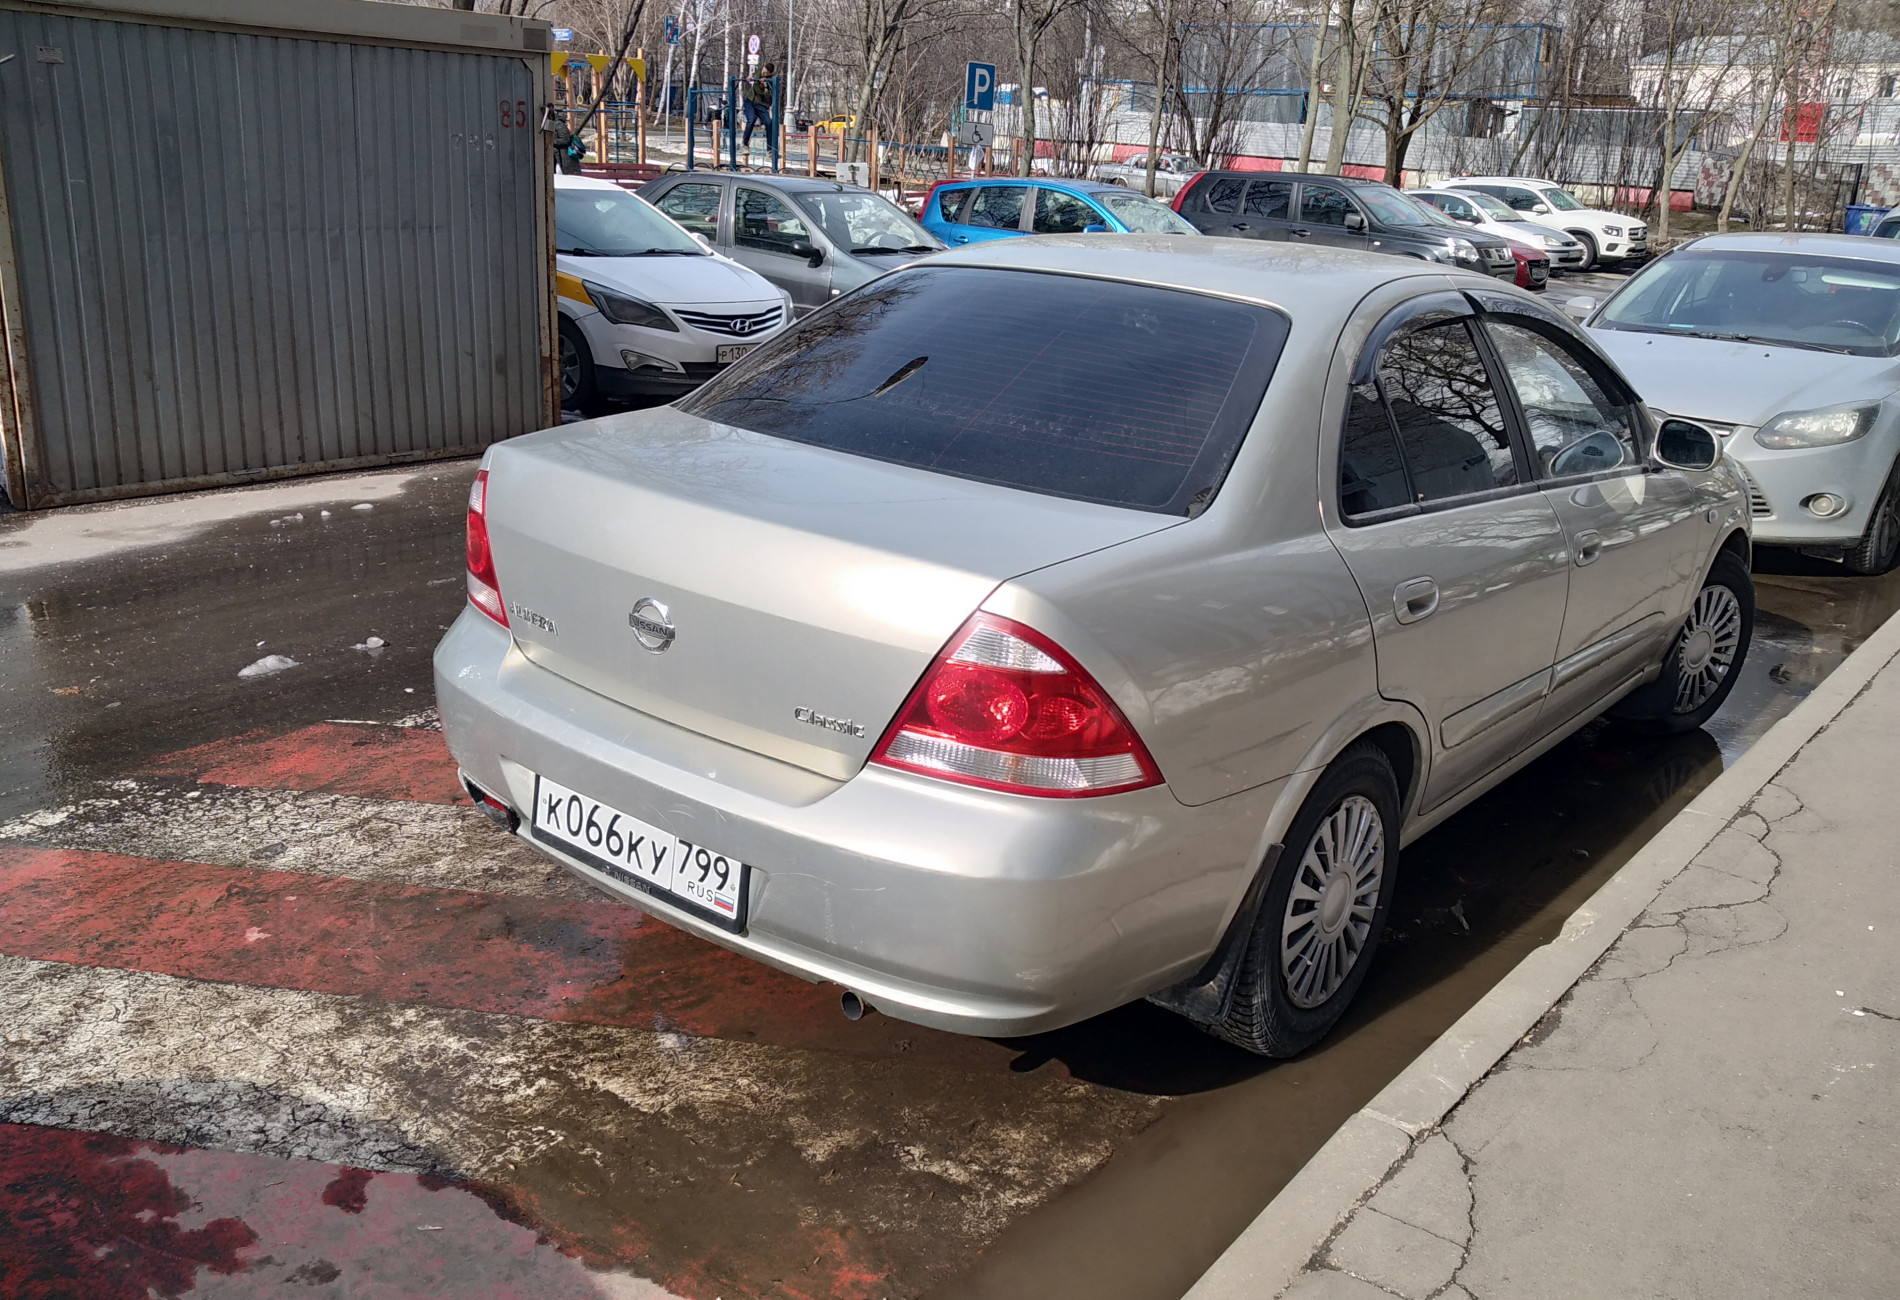 Аренда nissan almera эконом класса 2006 года в городе Москва Мичуринский проспект от 1400 руб./сутки, передний привод, двигатель: бензин, объем 1.6 литров, ОСАГО (Мультидрайв), без водителя, недорого, вид 2 - RentRide